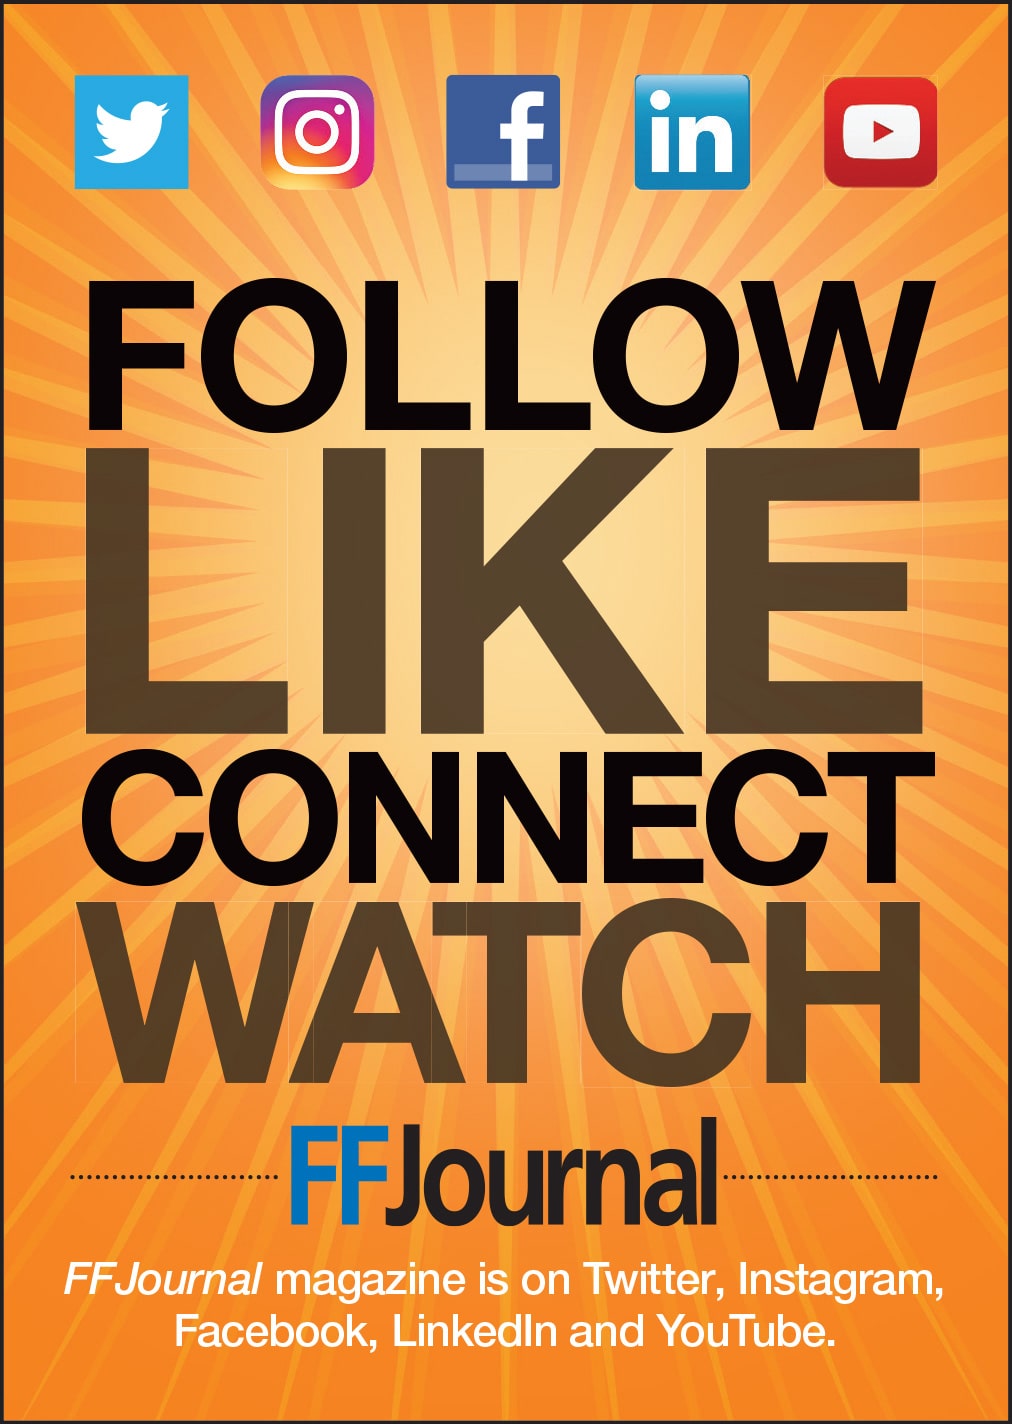 FFJournal Social Media Follow Advertisement